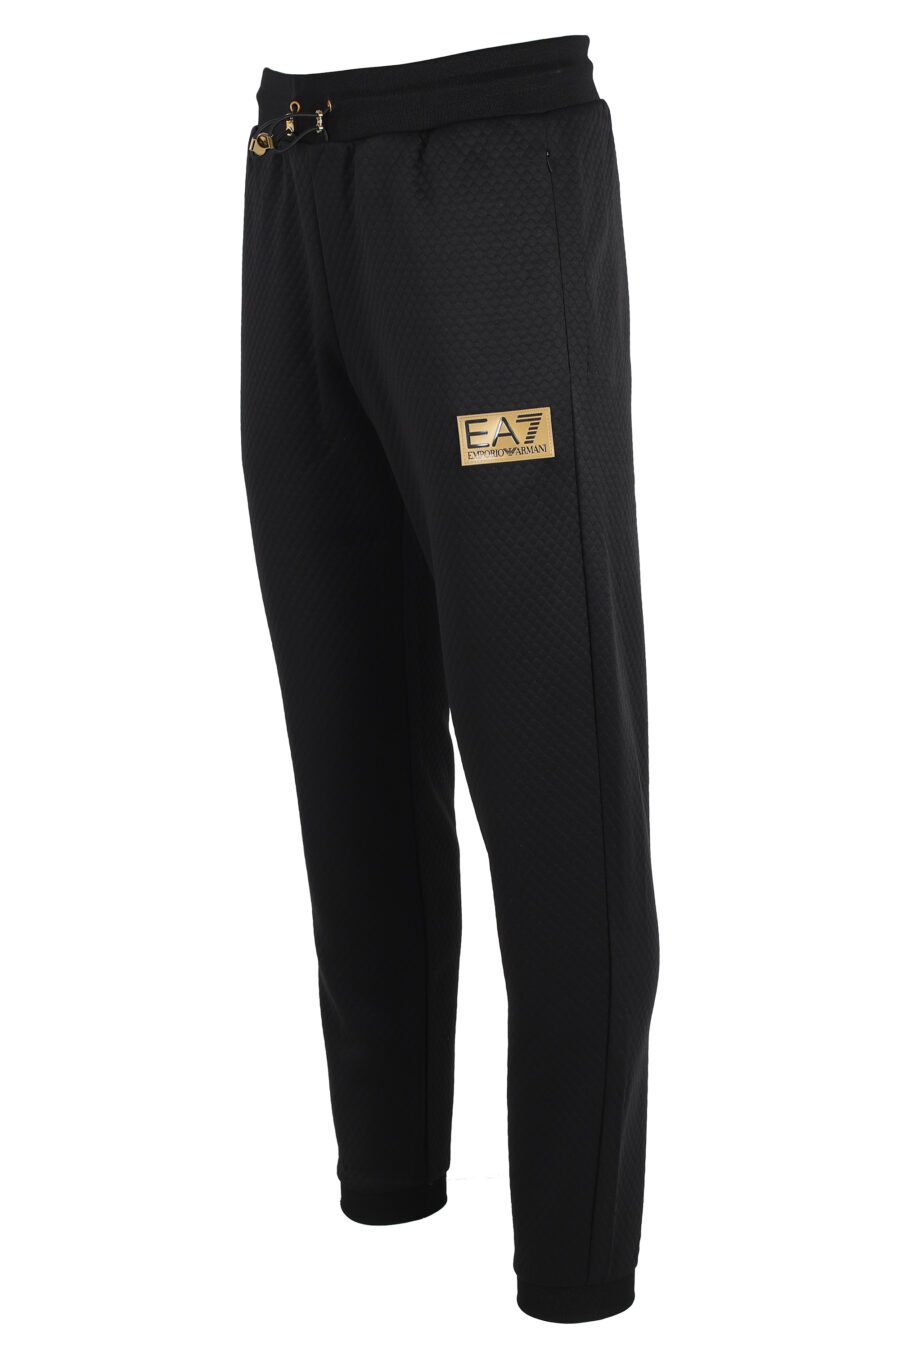 Pantalón de chándal negro con logo placa dorada "lux identity" - IMG 4816